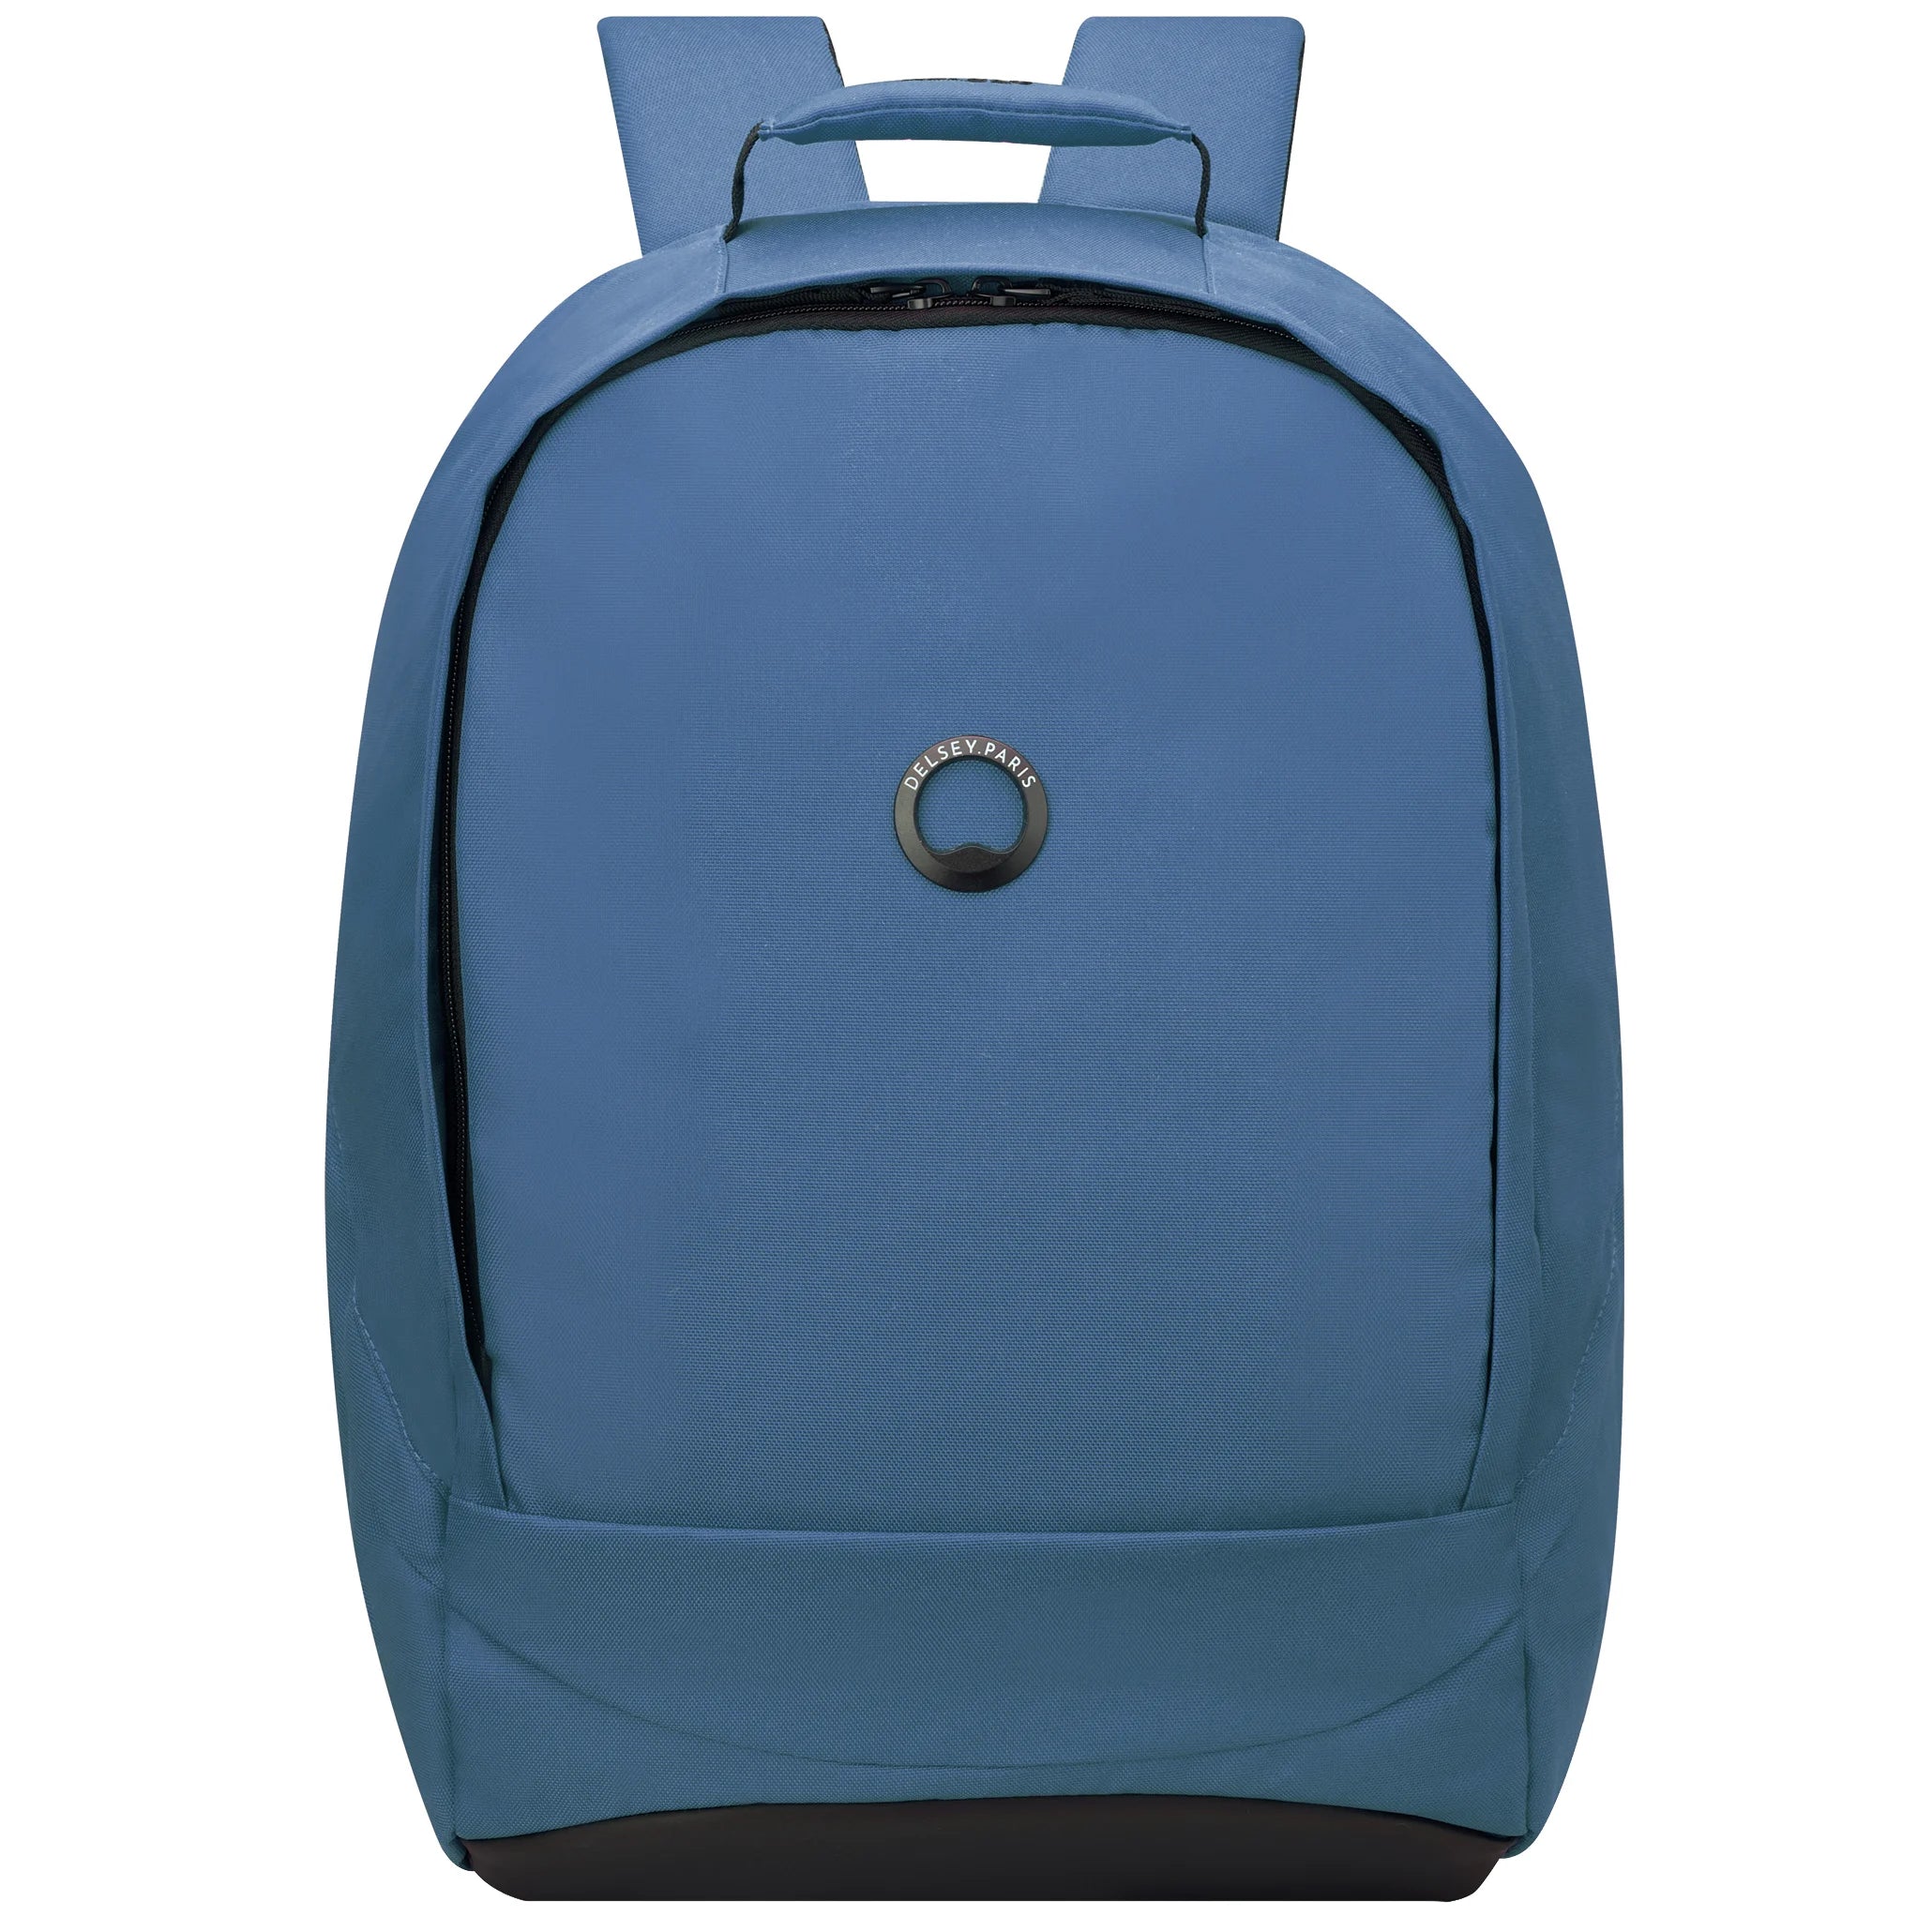 Delsey Securban laptop backpack 48 cm - Dark blue